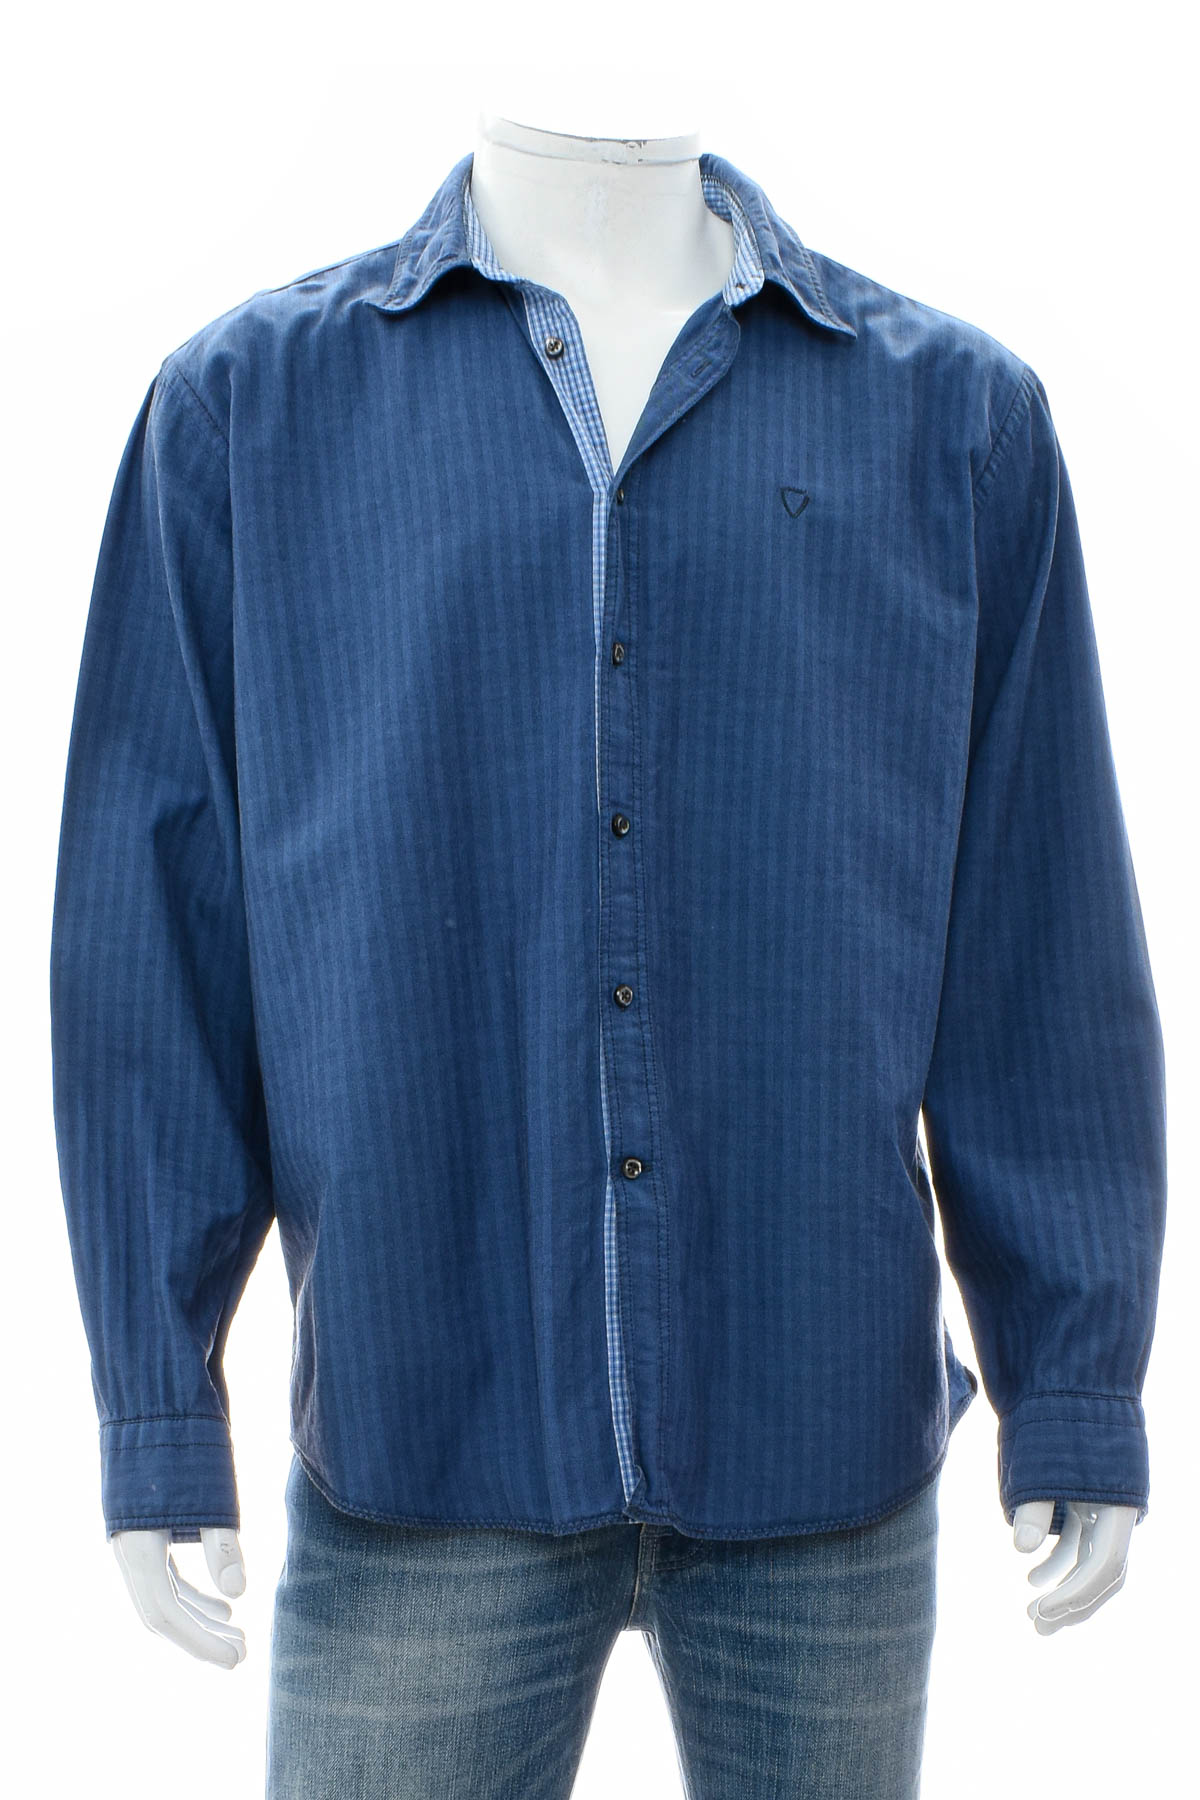 Ανδρικό πουκάμισο - Strellson - 0